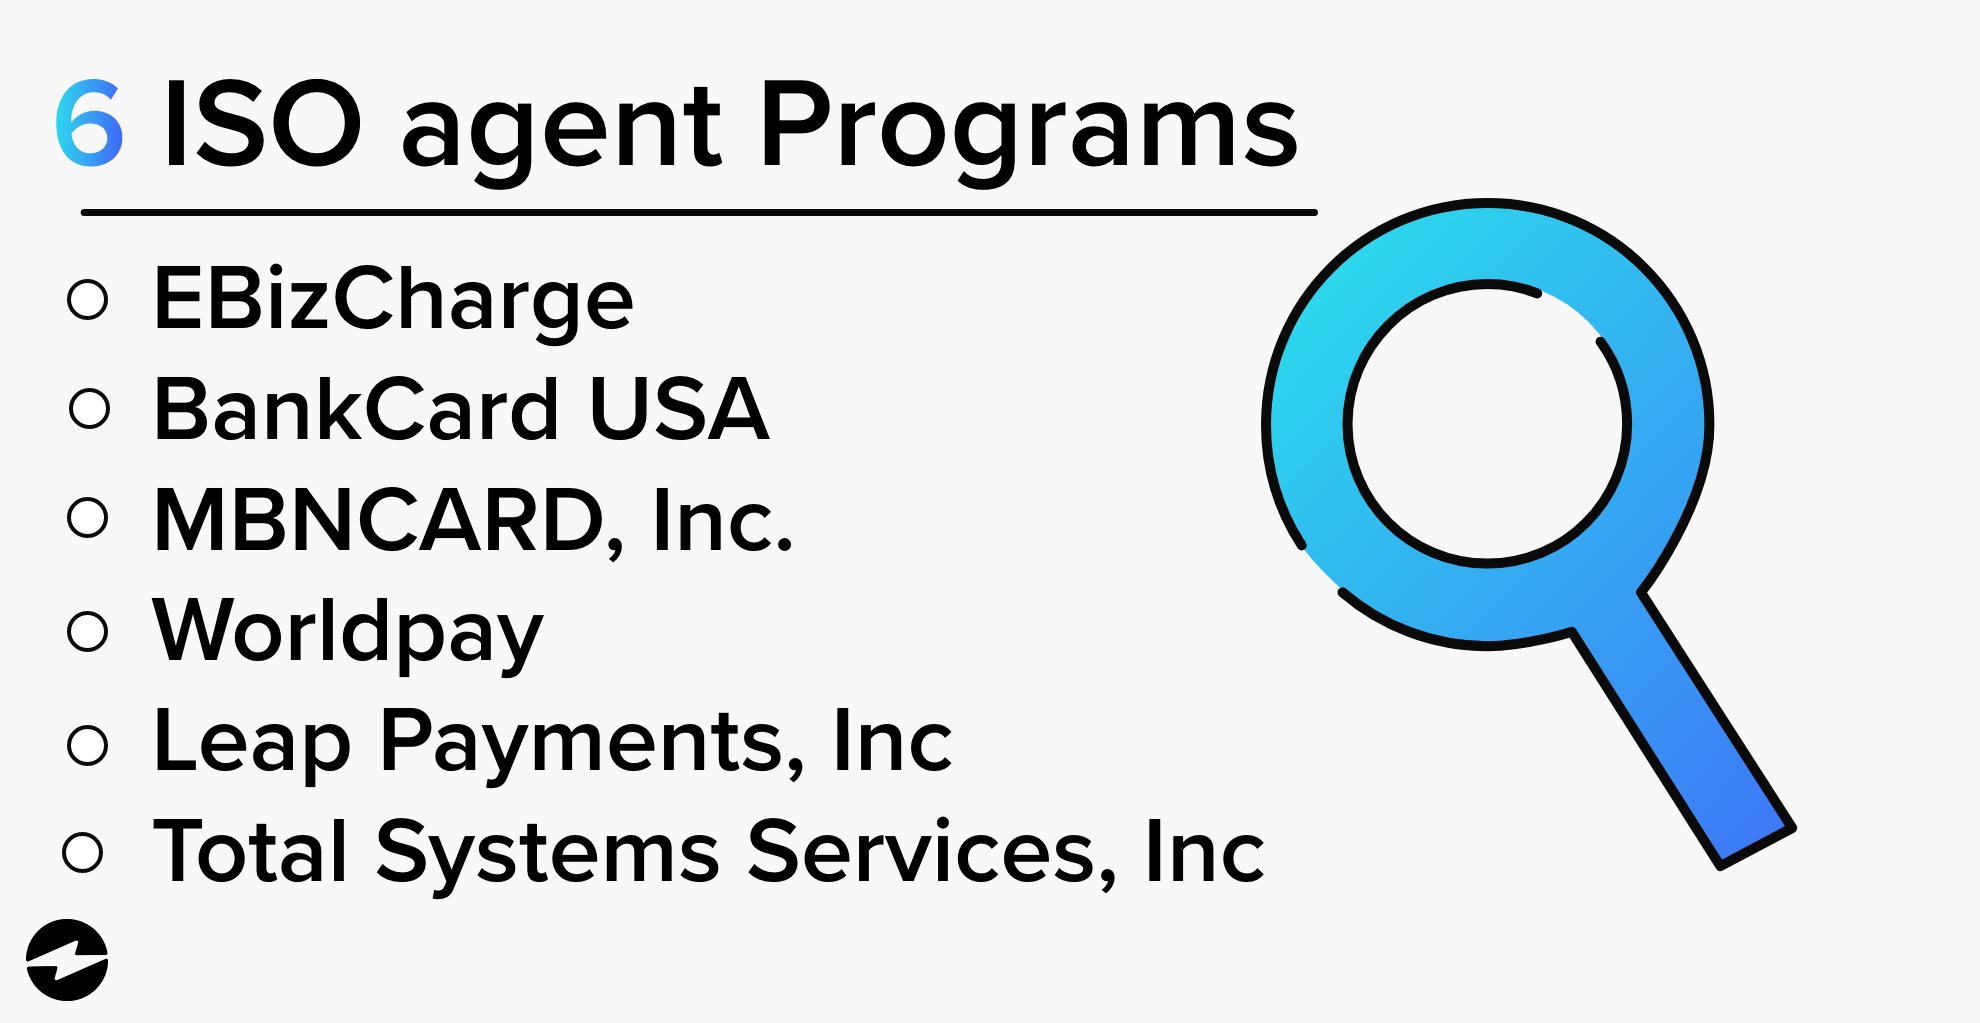 6 ISO agent programs